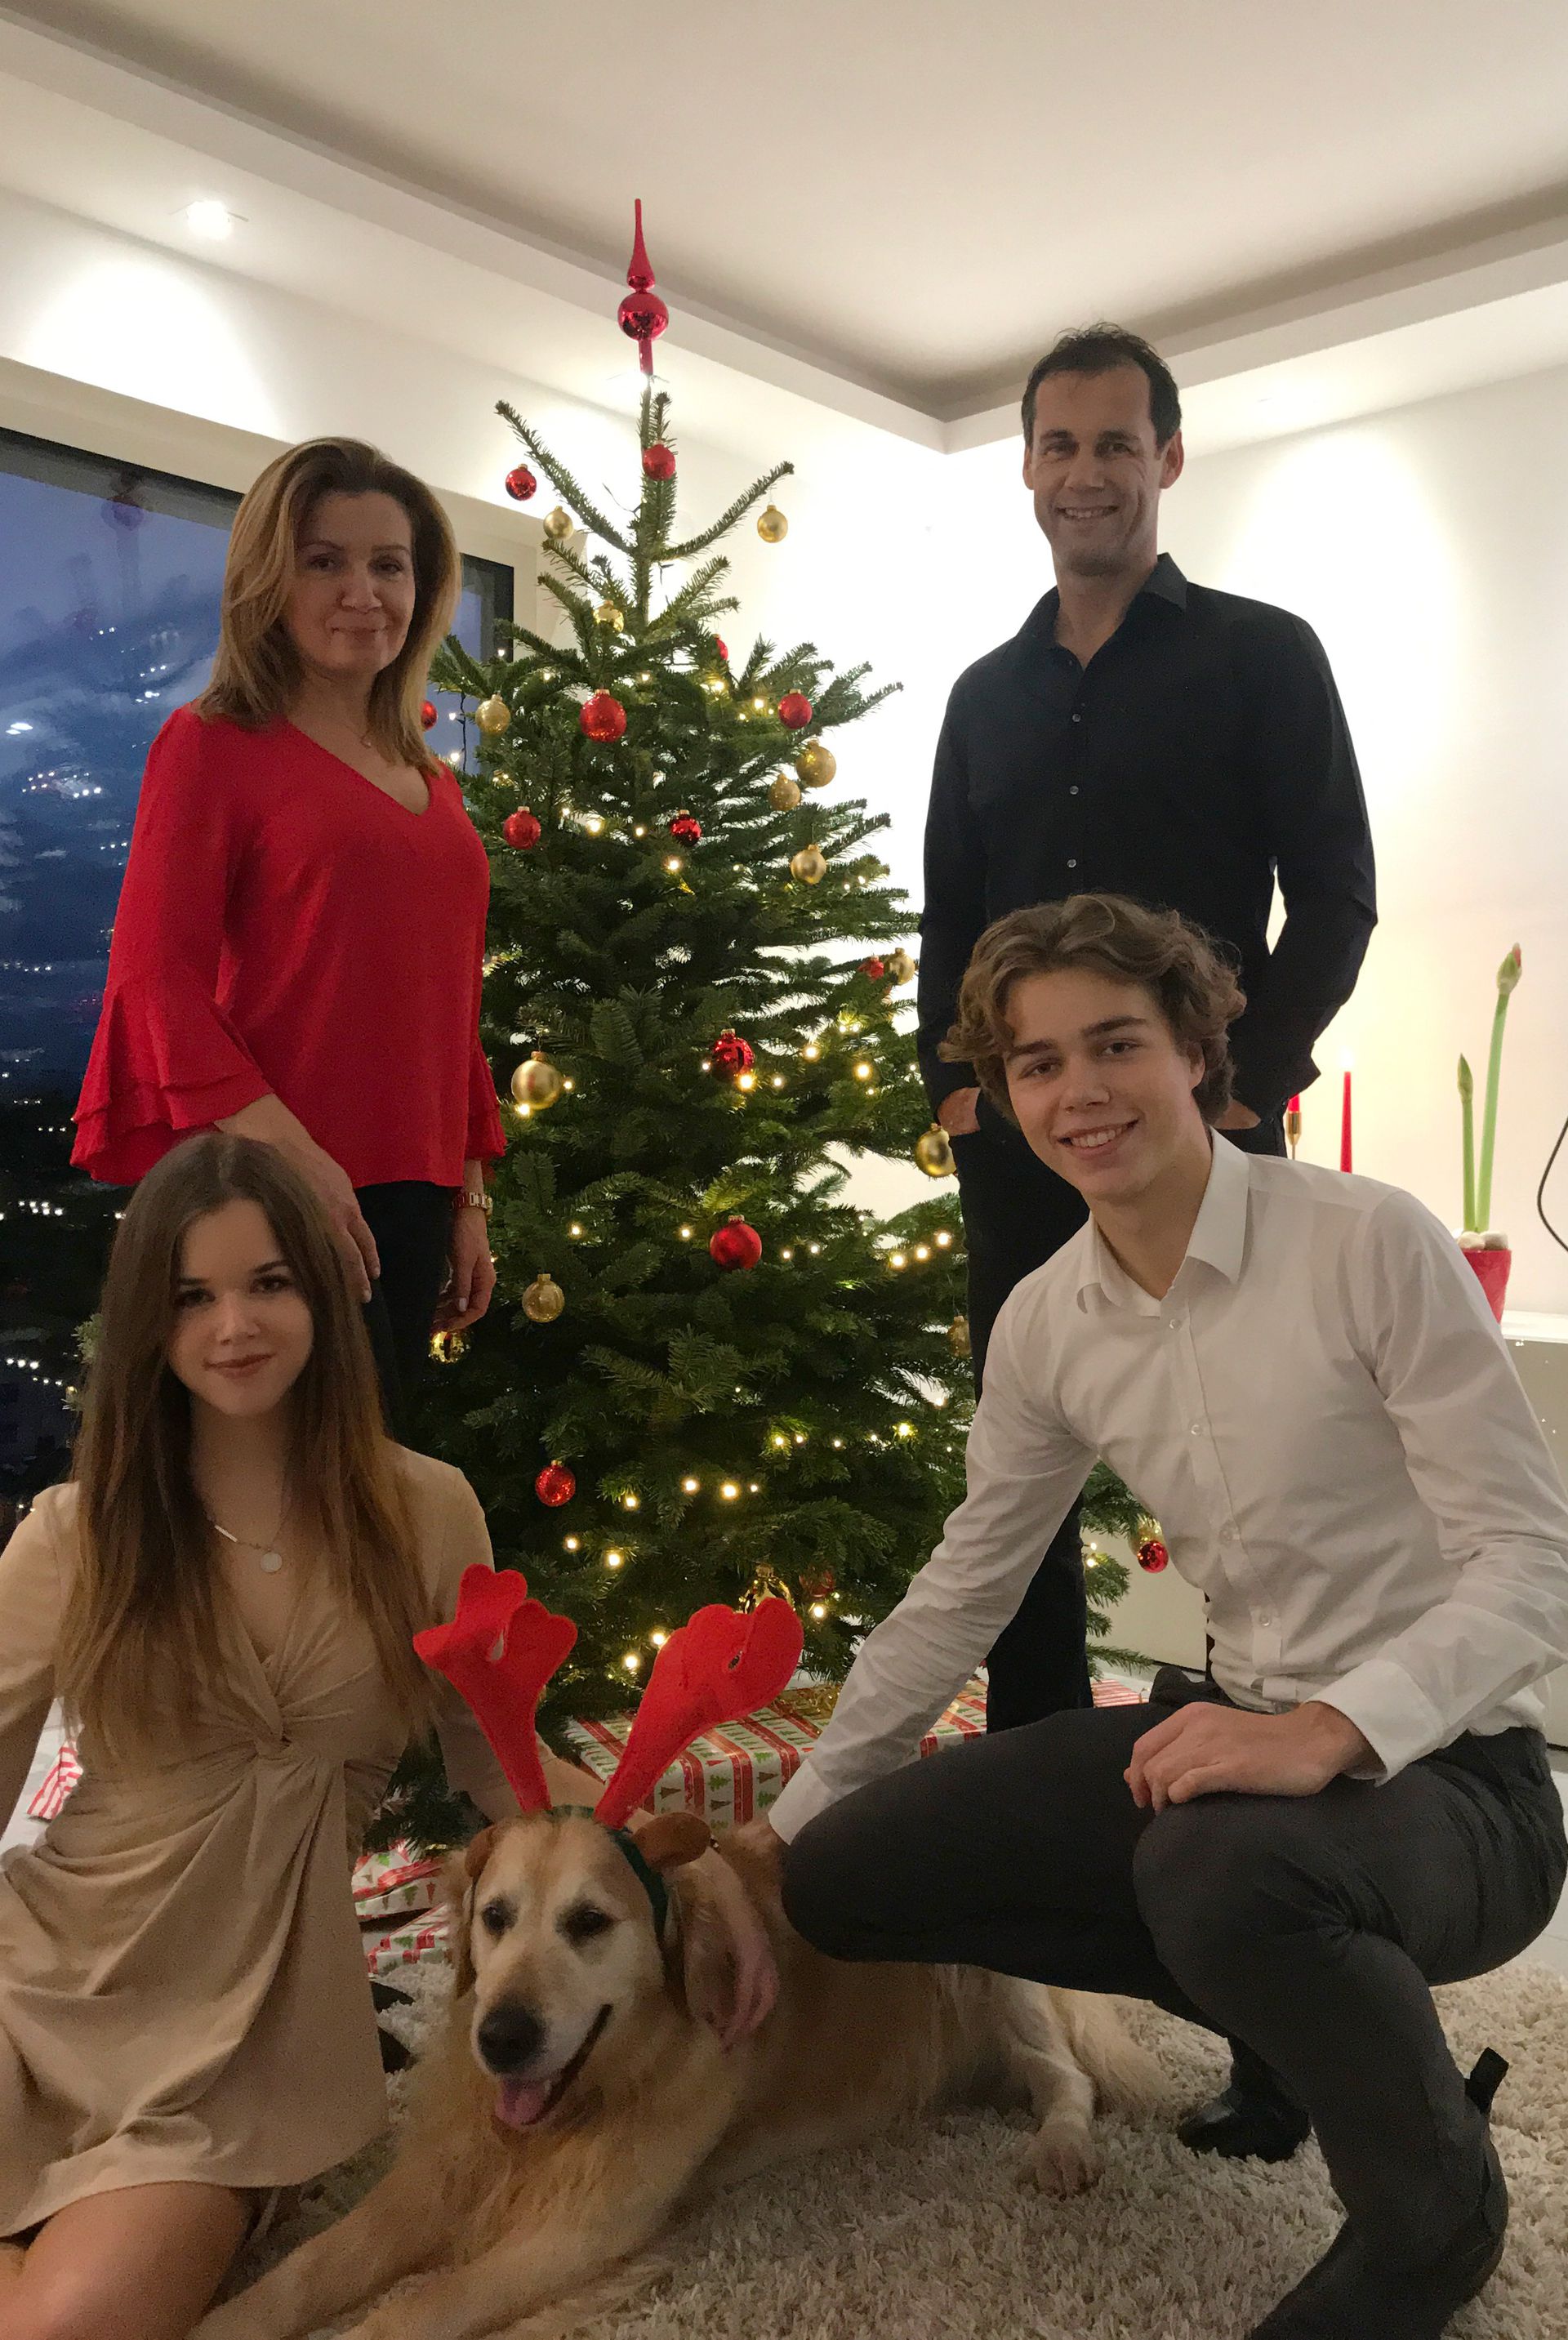 A legutóbbi közös családi fotó még karácsonykor készült – Bódog június végéig aligha látja feleségét, Mariannt és két gyermekét, Grétát és Donátot.